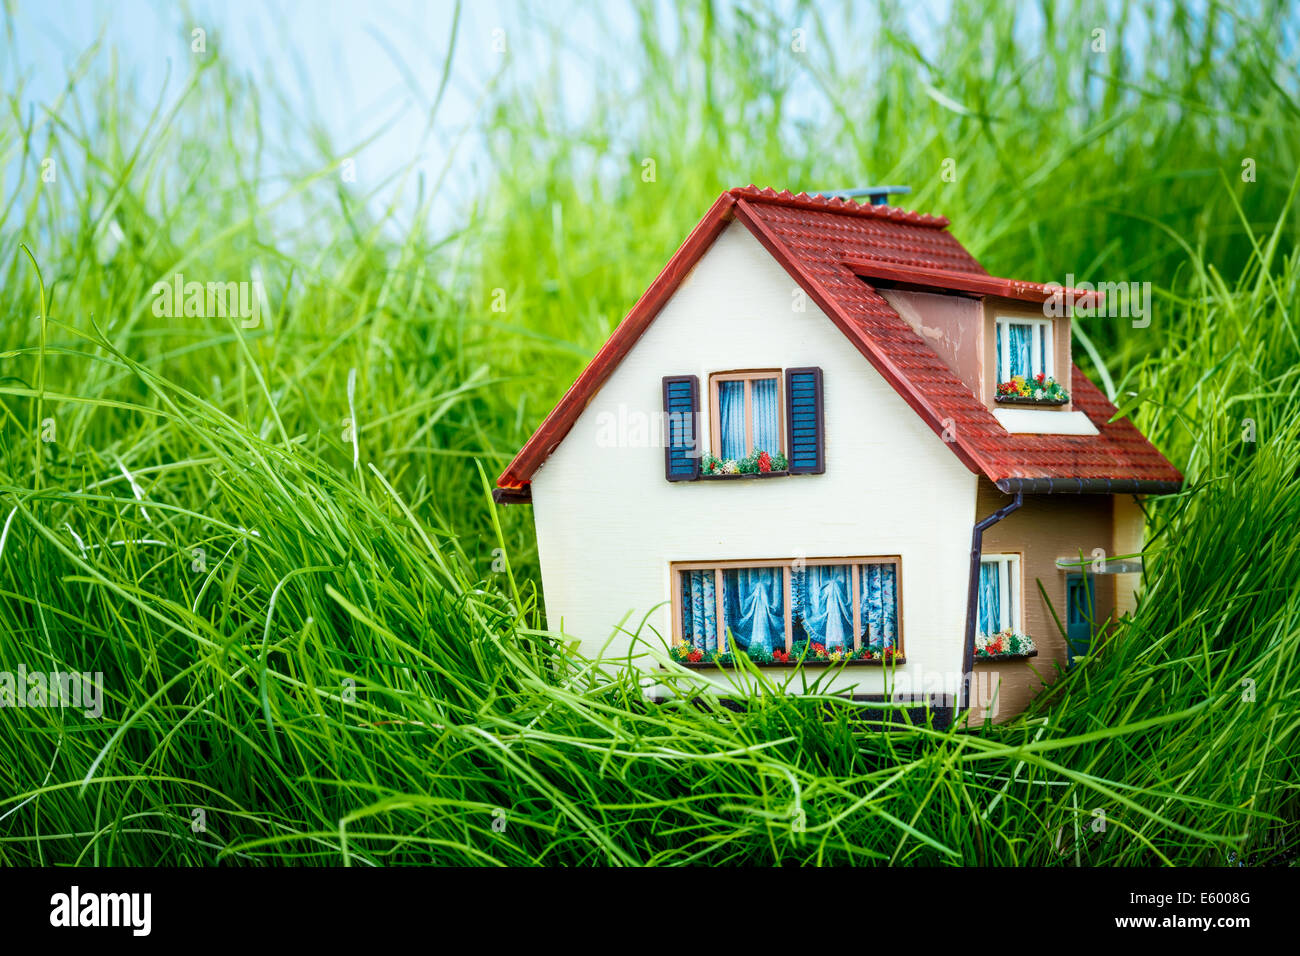 Petite maison sur l'herbe verte Banque D'Images